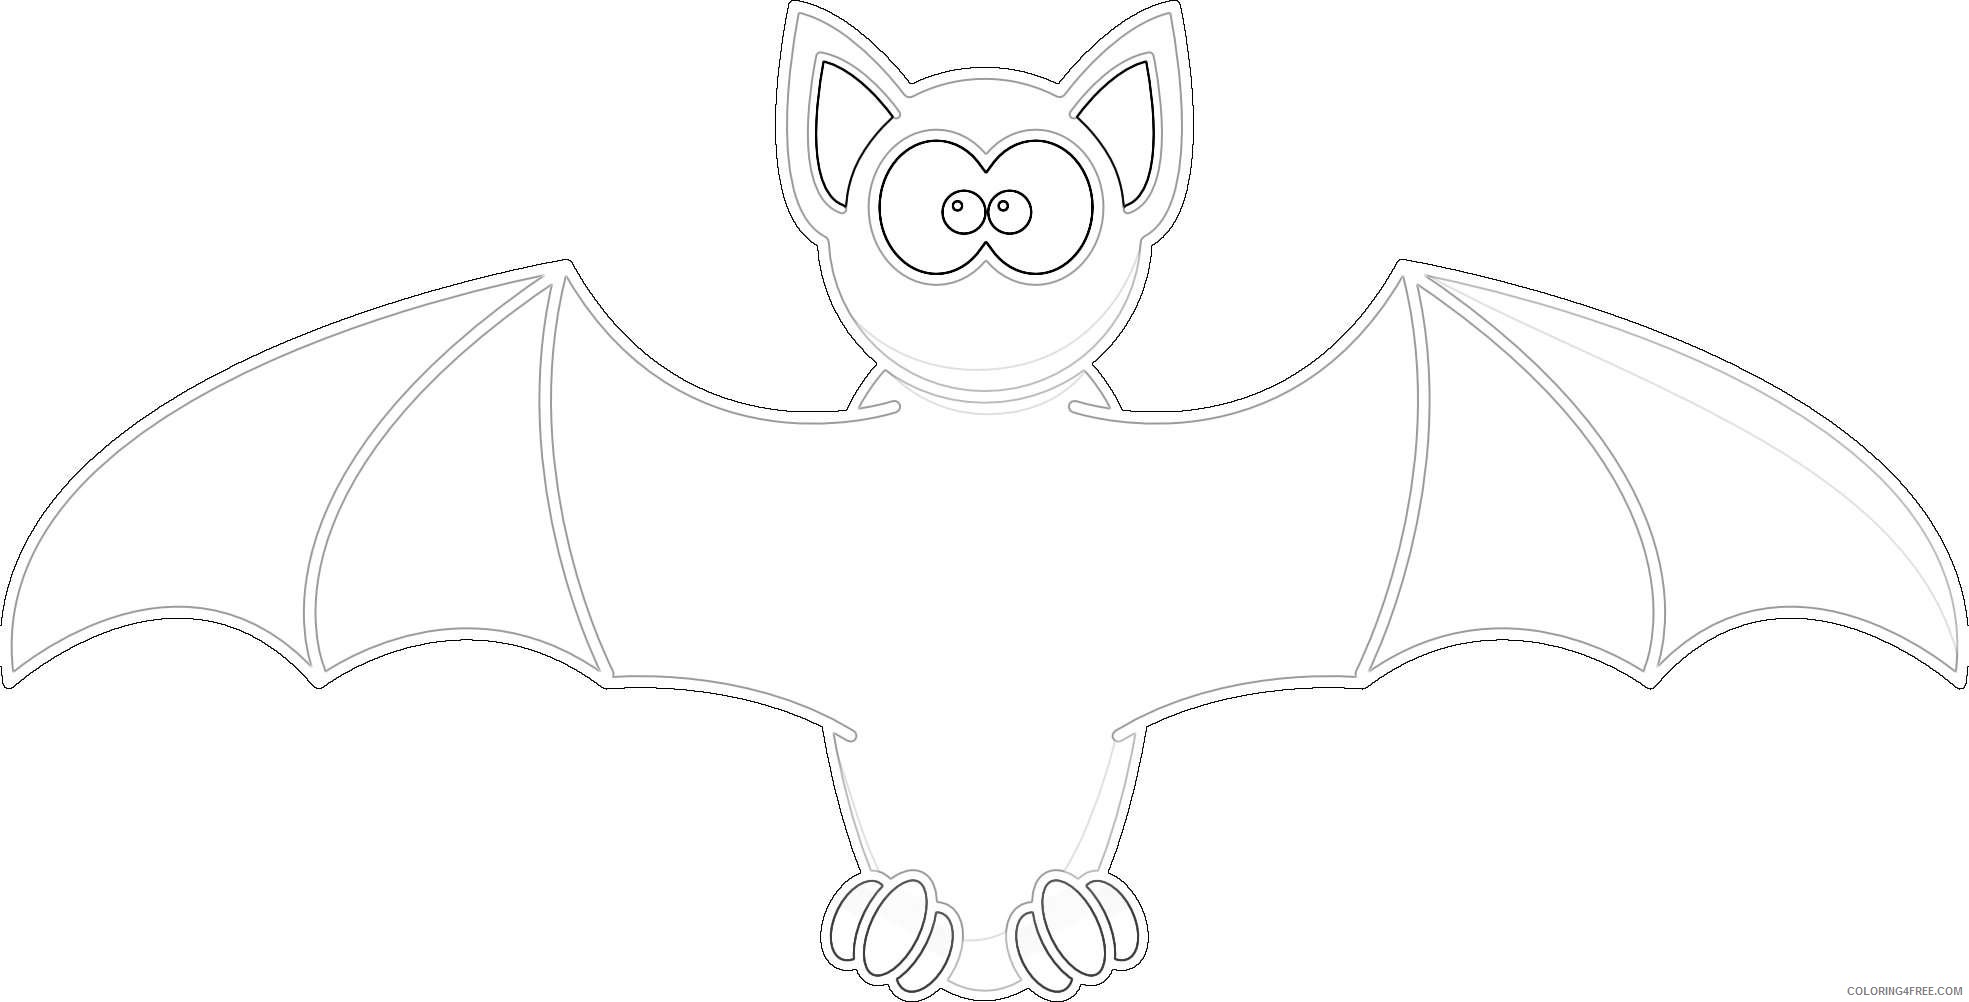 Download cute bat f8xVel coloring - Coloring4Free.com